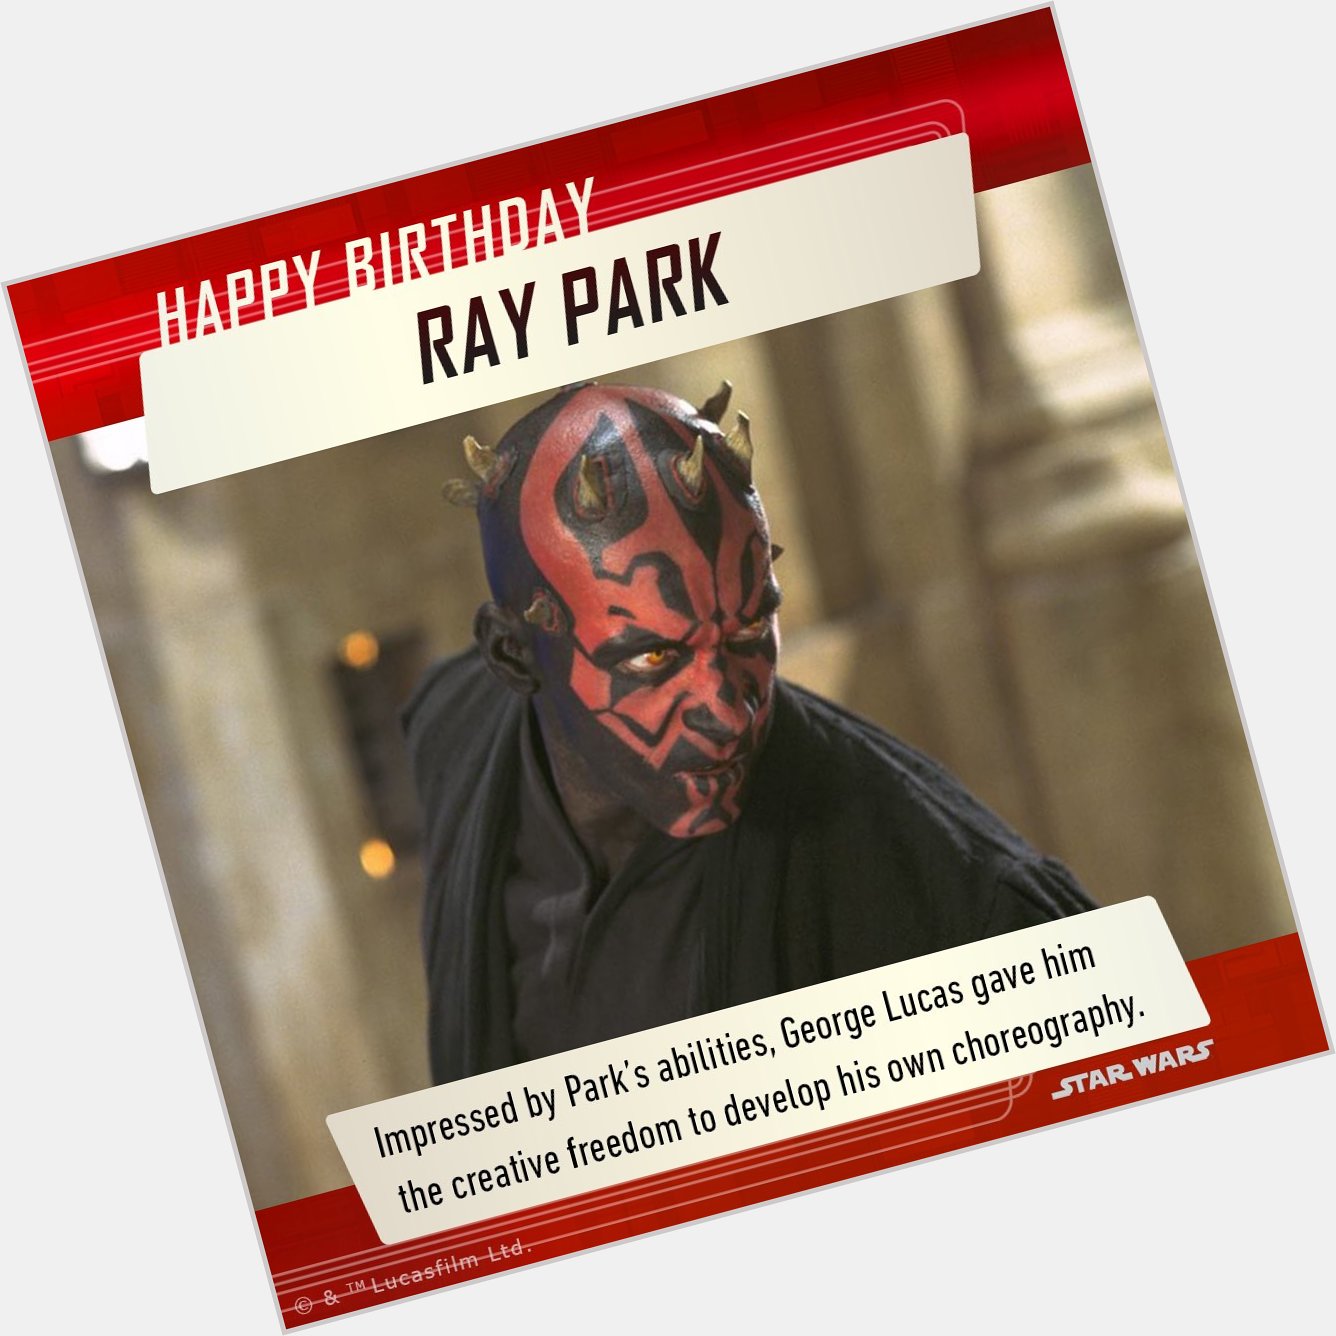 Happy Birthday Ray Park!  